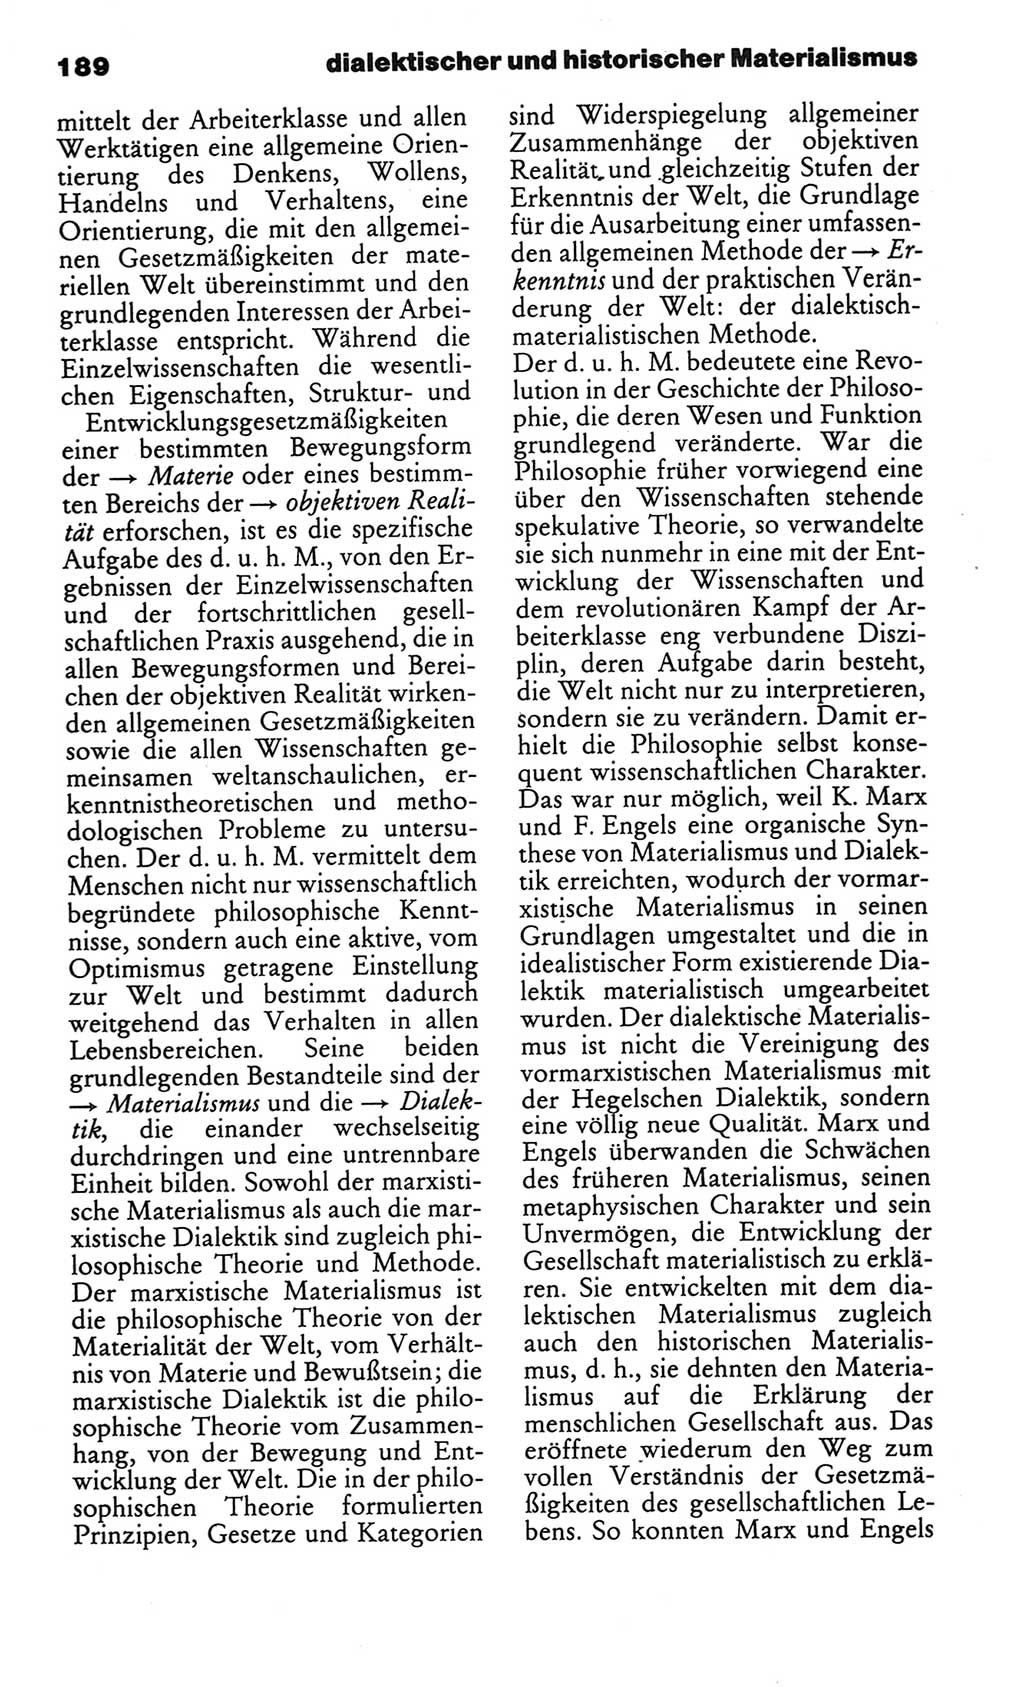 Kleines politisches Wörterbuch [Deutsche Demokratische Republik (DDR)] 1986, Seite 189 (Kl. pol. Wb. DDR 1986, S. 189)